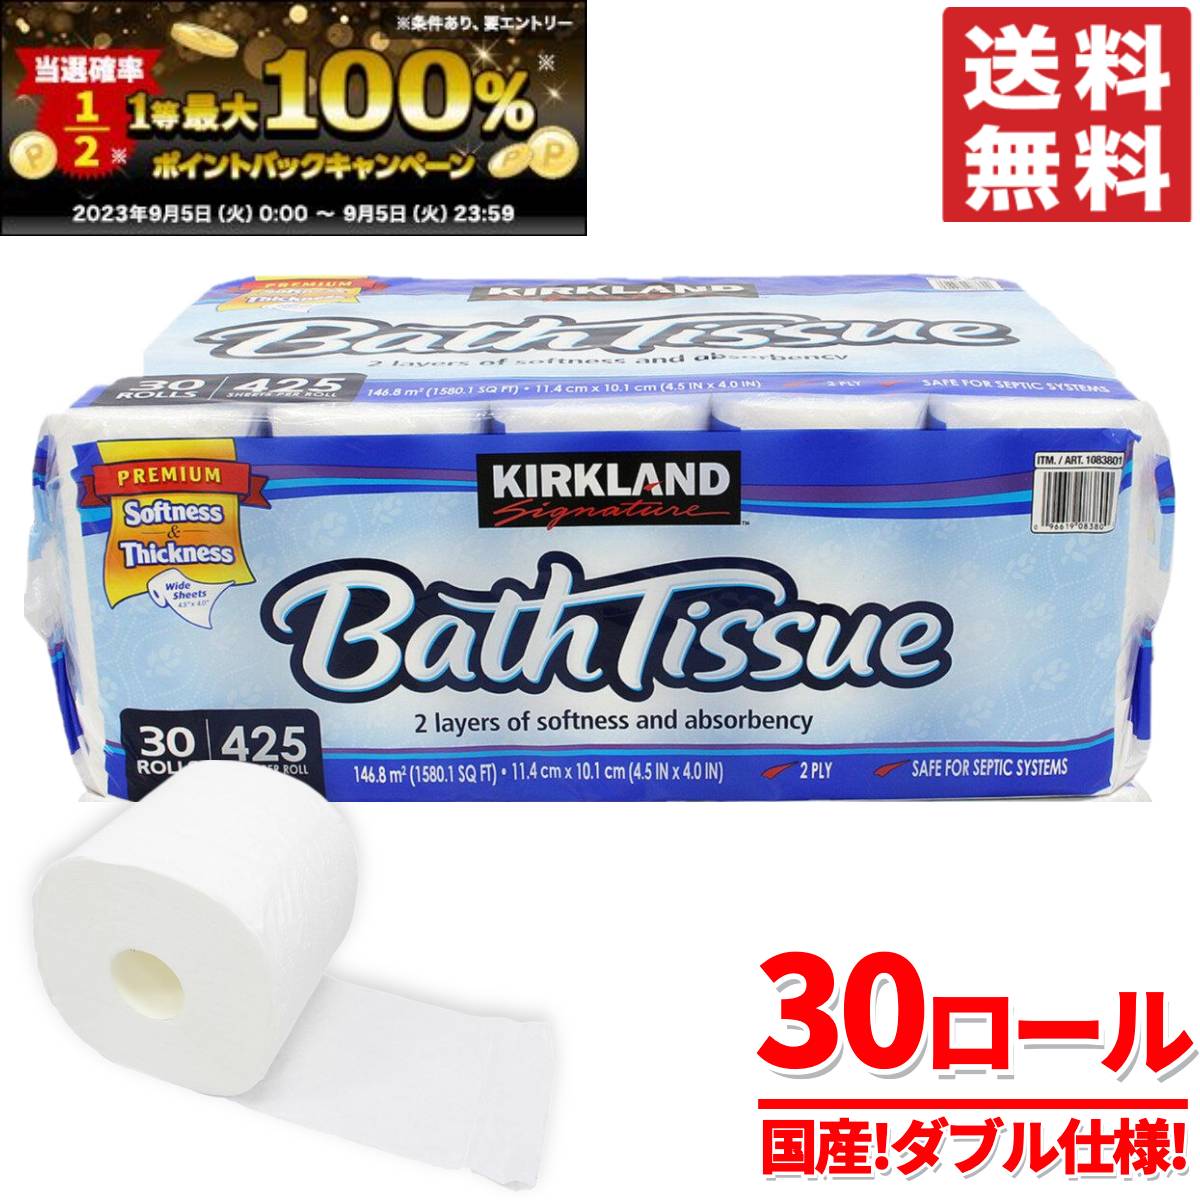 【楽天市場】コストコ トイレットペーパー 30個 カークランド